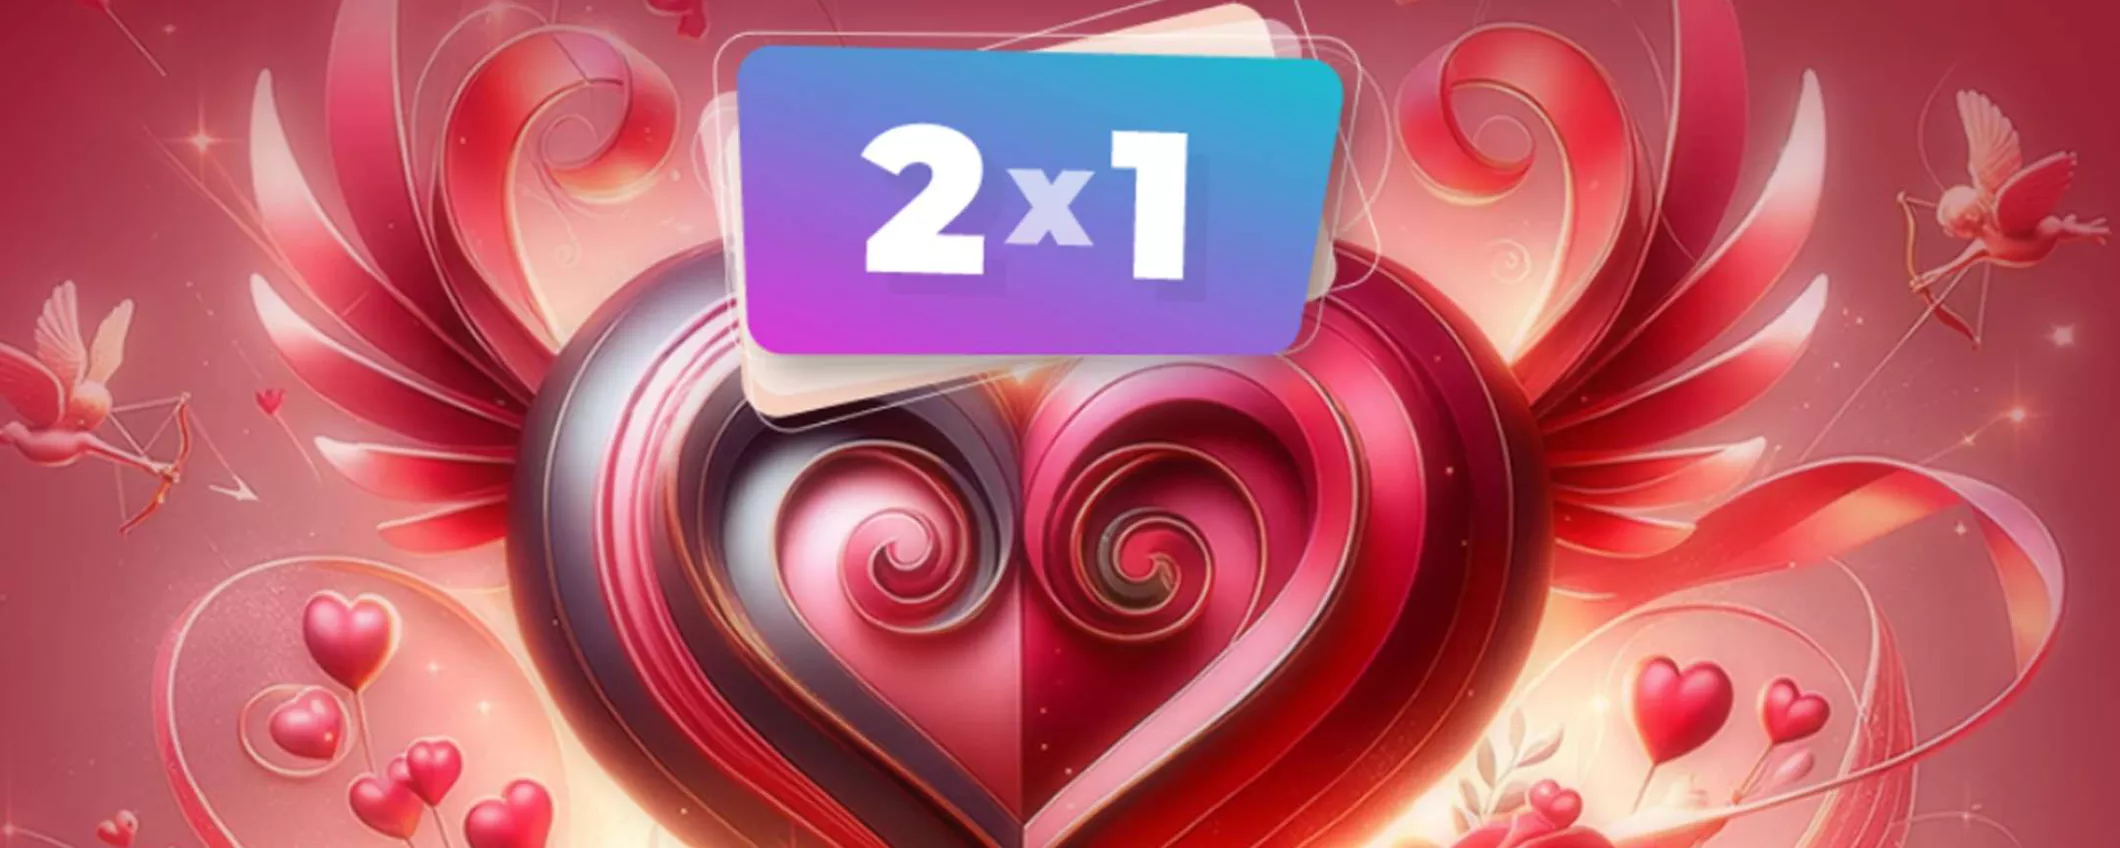 pCloud festeggia San Valentino con le super offerte sui piani a vita (a partire da 199€)